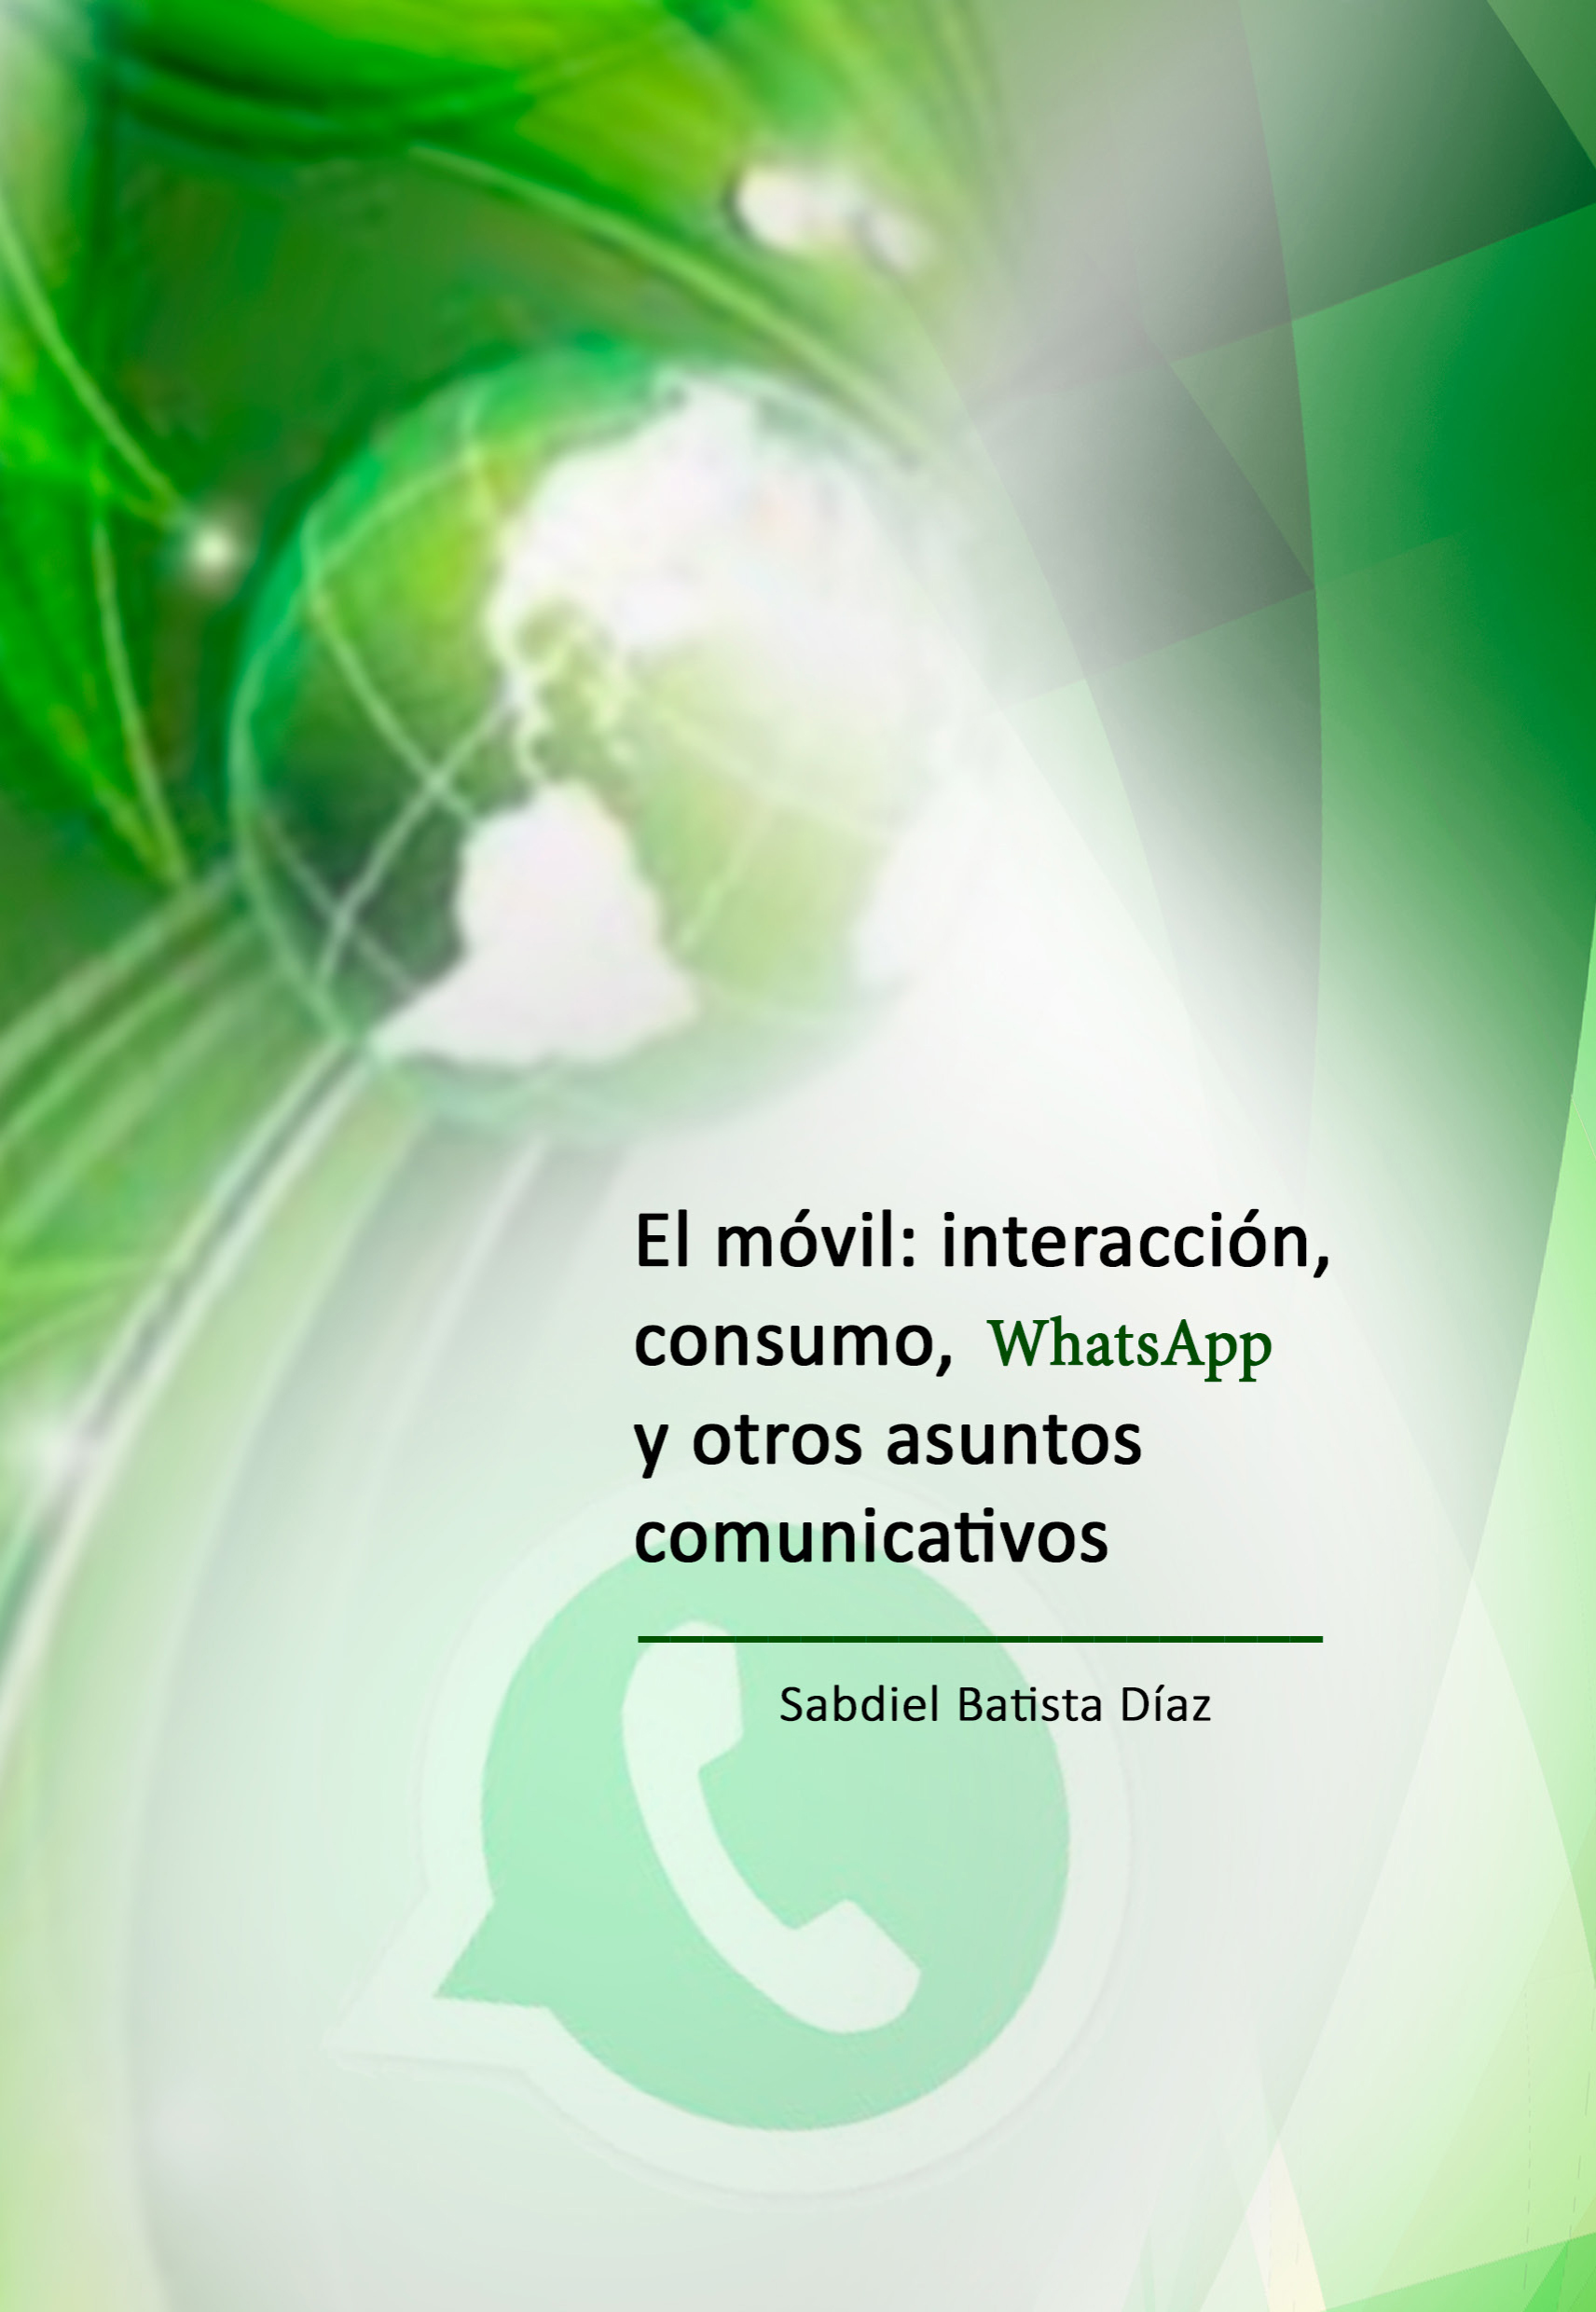 El móvil: interacción, consumo, WhatsApp y otros asuntos comunicativos